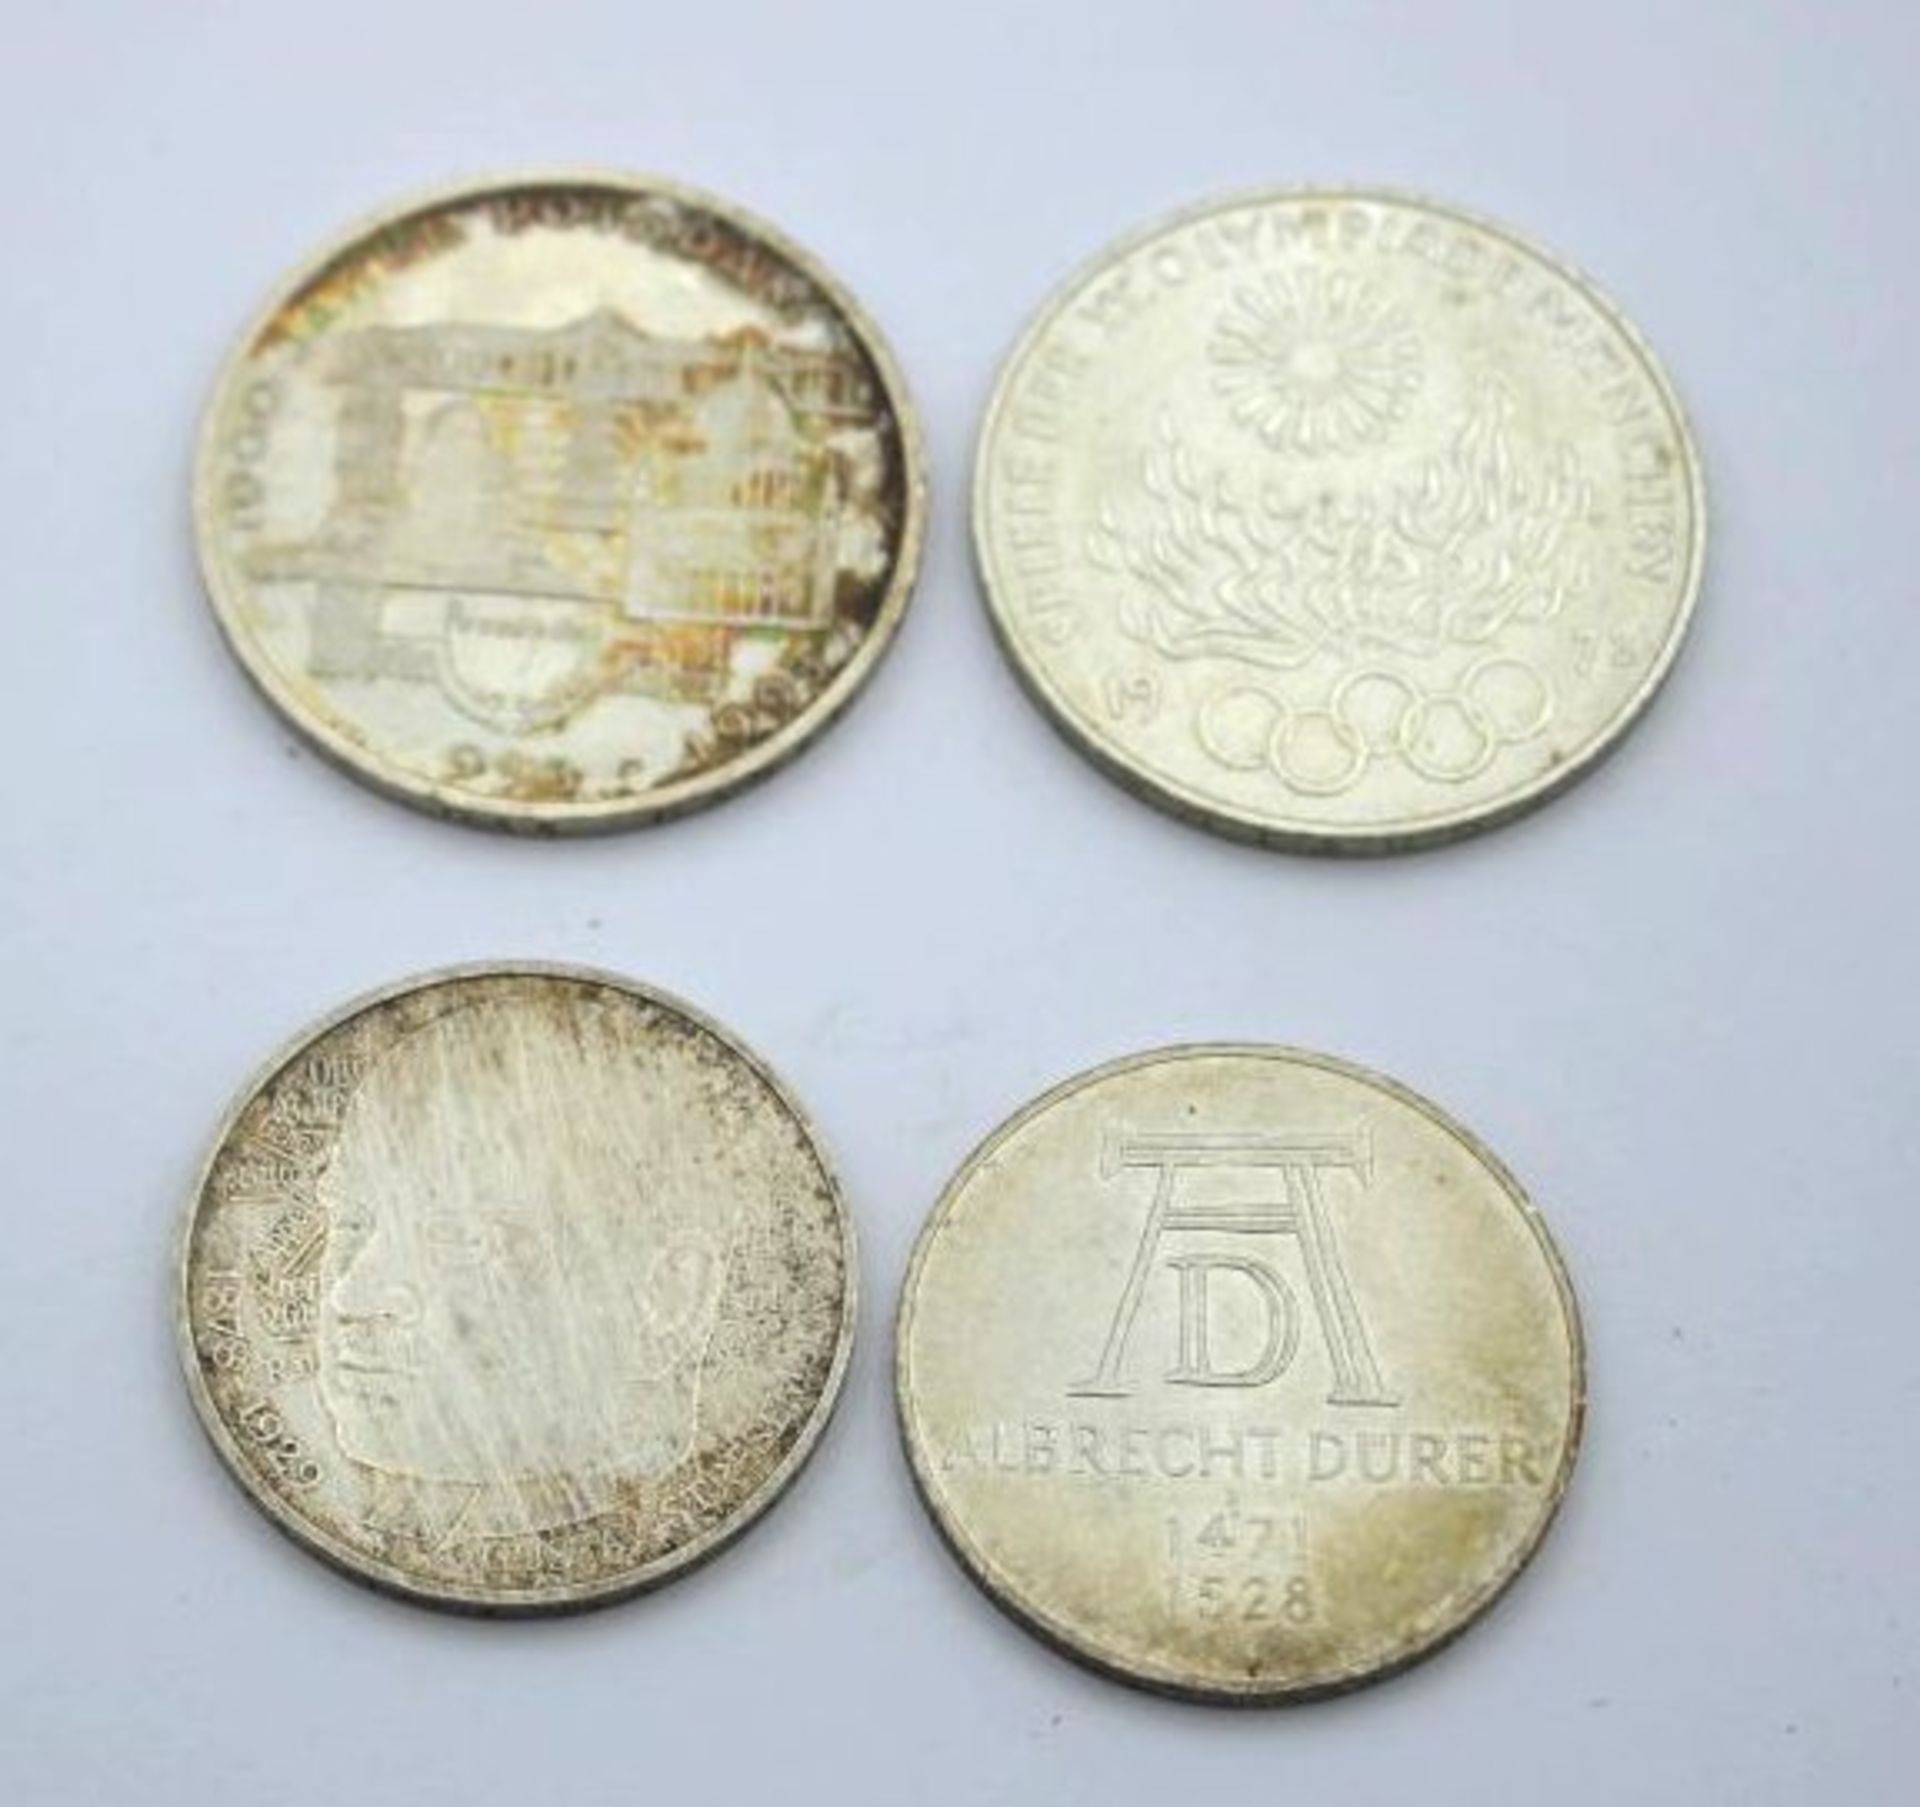 2x 10 DM Münzen 1972 D u. 1993 F sowie 2x 5 DM 1971 D u. 1978 D. - Bild 2 aus 2